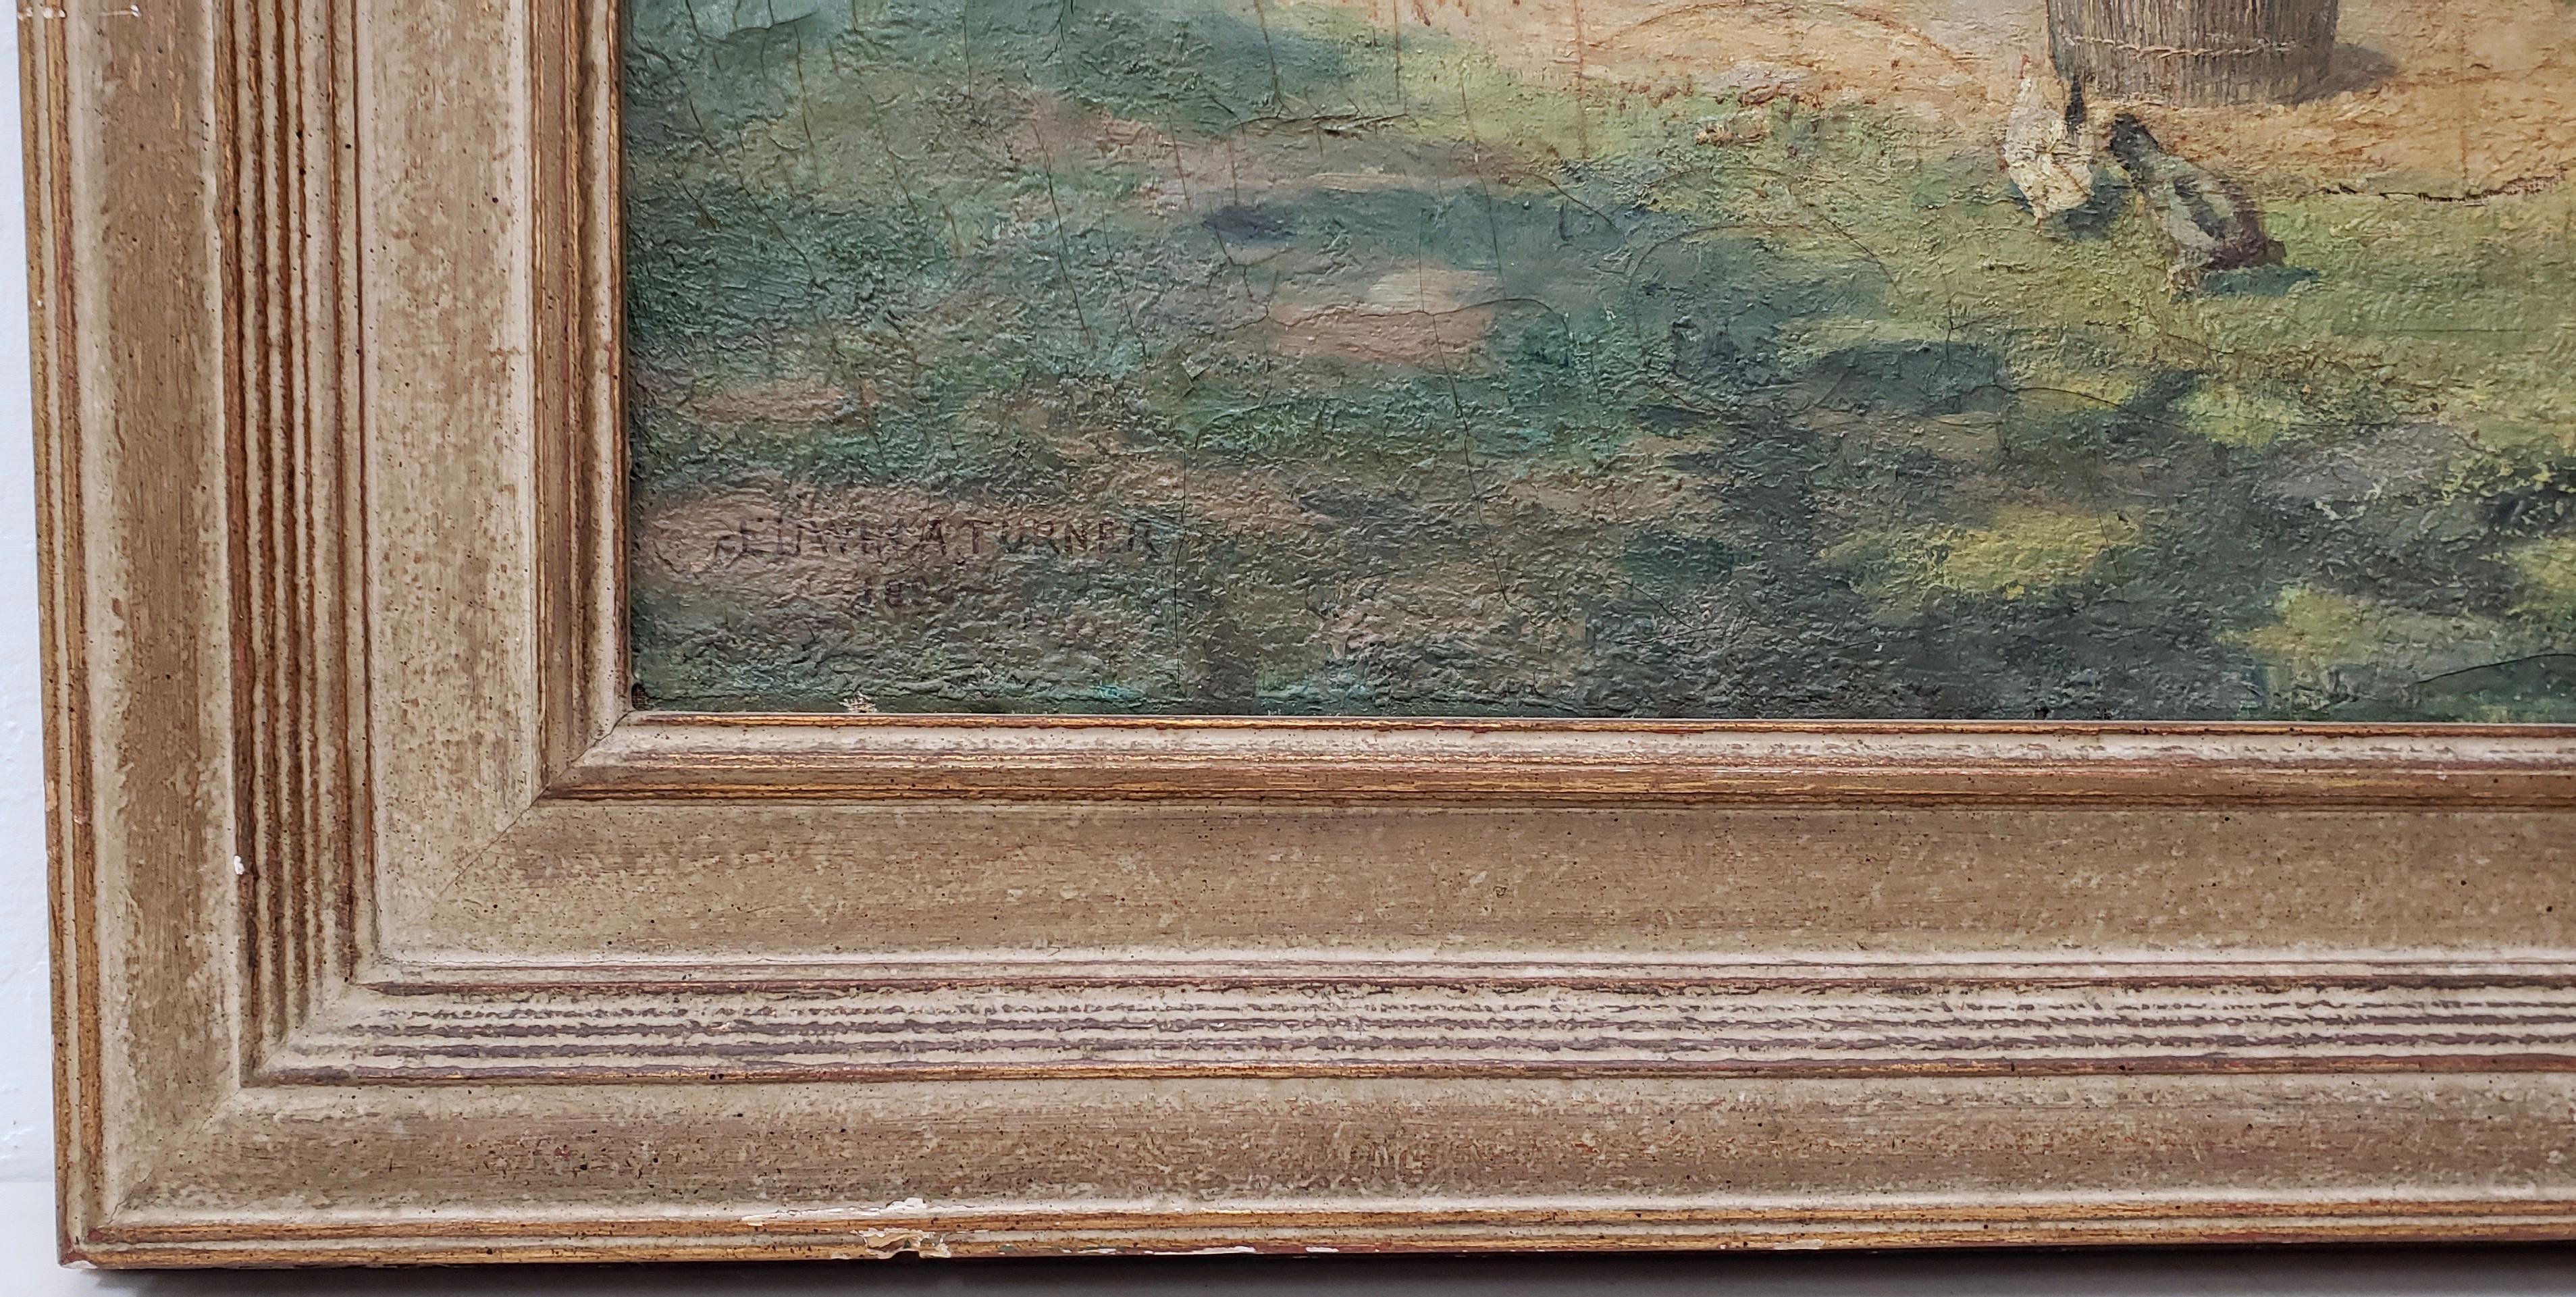 Edwin A Turner (1854-1899), peinture à l'huile à grande échelle d'une ferme européenne du 19e siècle, vers 1890

Ancienne peinture à l'huile de l'école européenne réalisée par l'artiste américain Edwin Turner.

Une ferme au toit de chaume avec